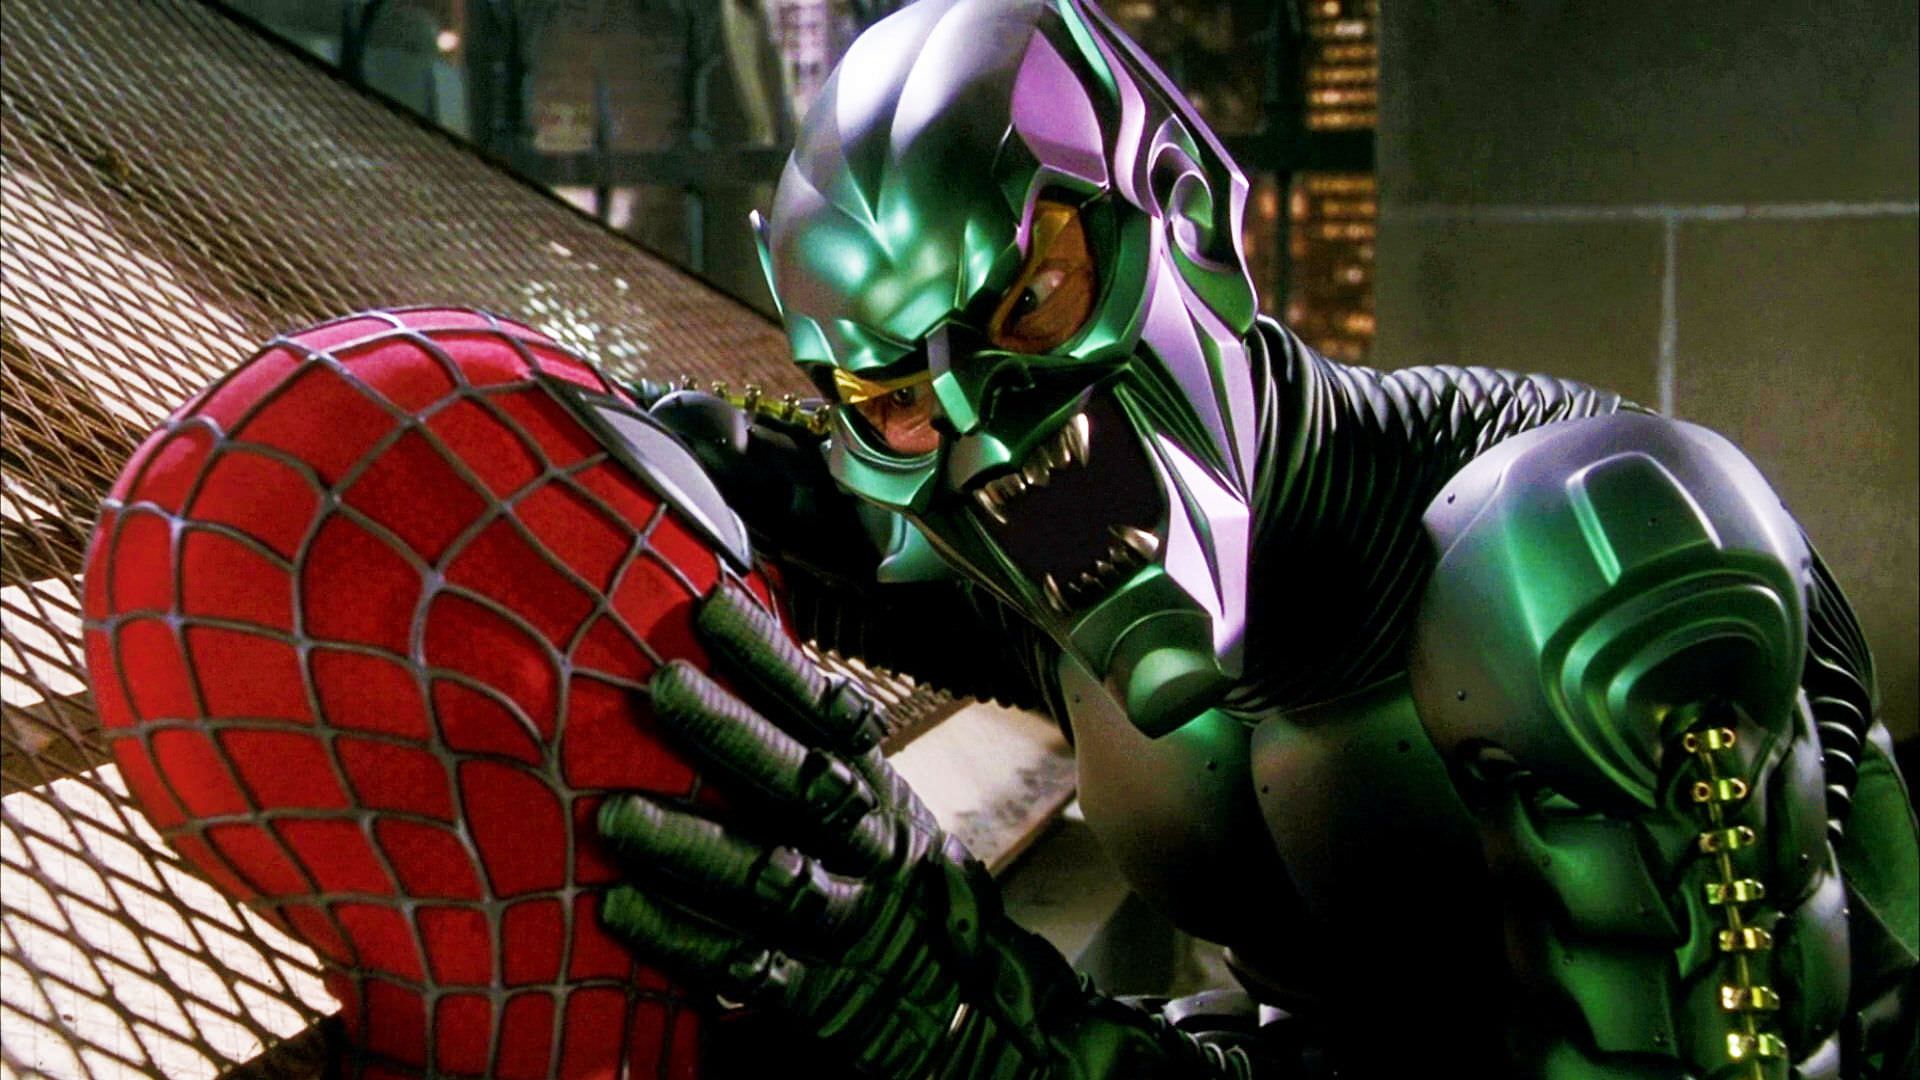 گرین گابلین با بازی ویلم دفو در حال مبارزه با مرد عنکبوتی با بازی توبی مگوایر در فیلم Spider-Man